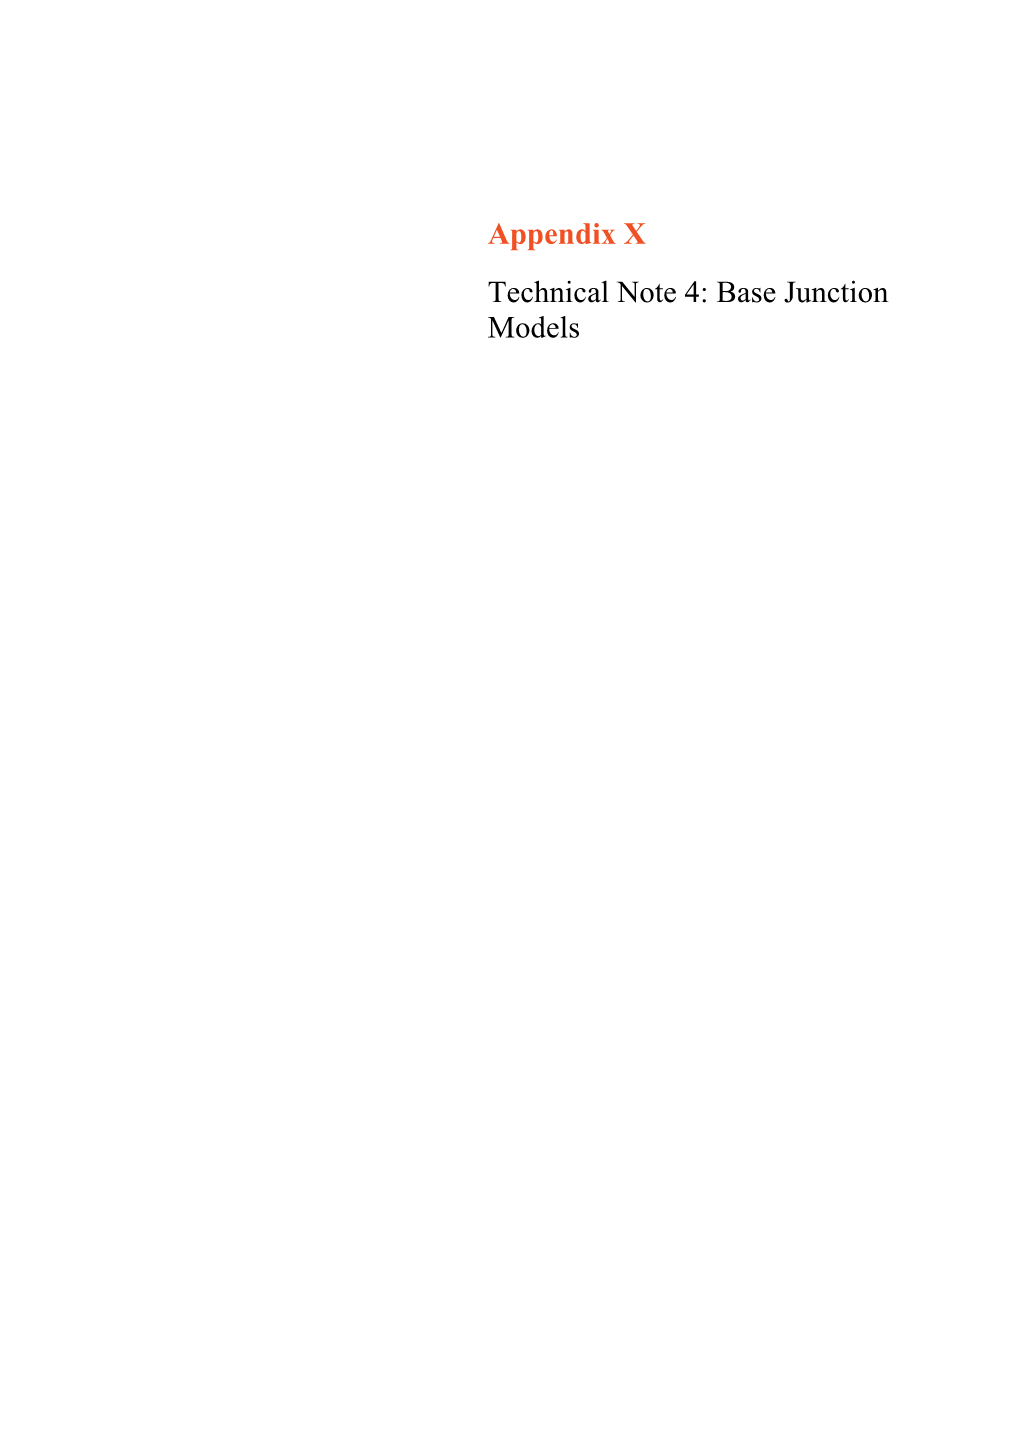 Appendix X Technical Note 4: Base Junction Models